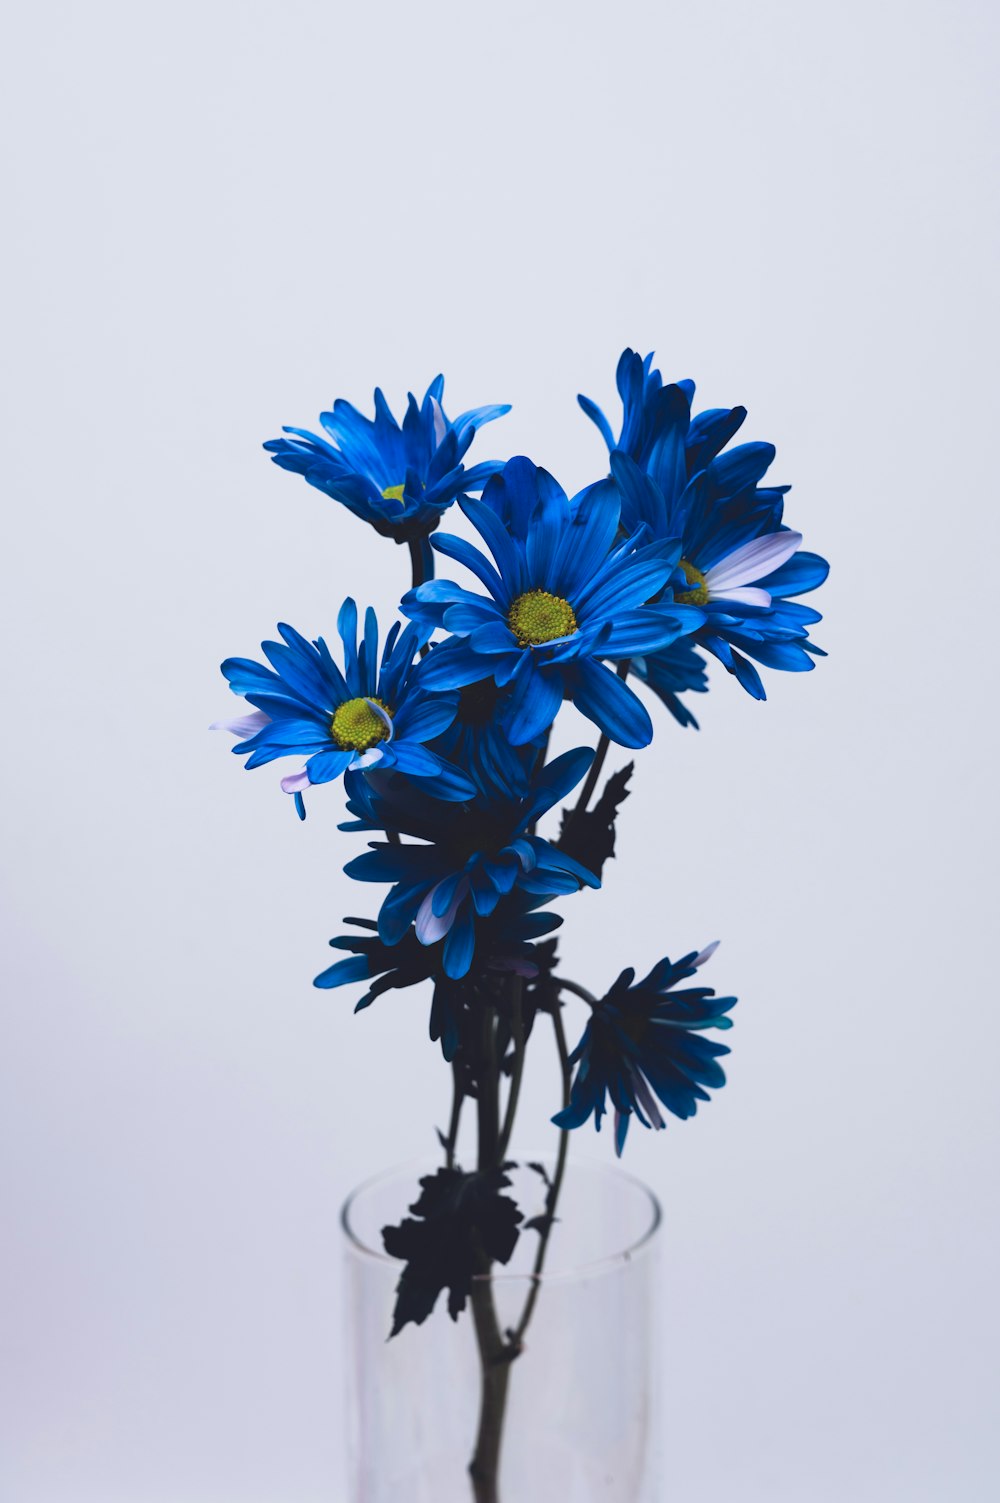 fleurs bleues et blanches sur fond blanc photo – Photo Fleur Gratuite sur  Unsplash